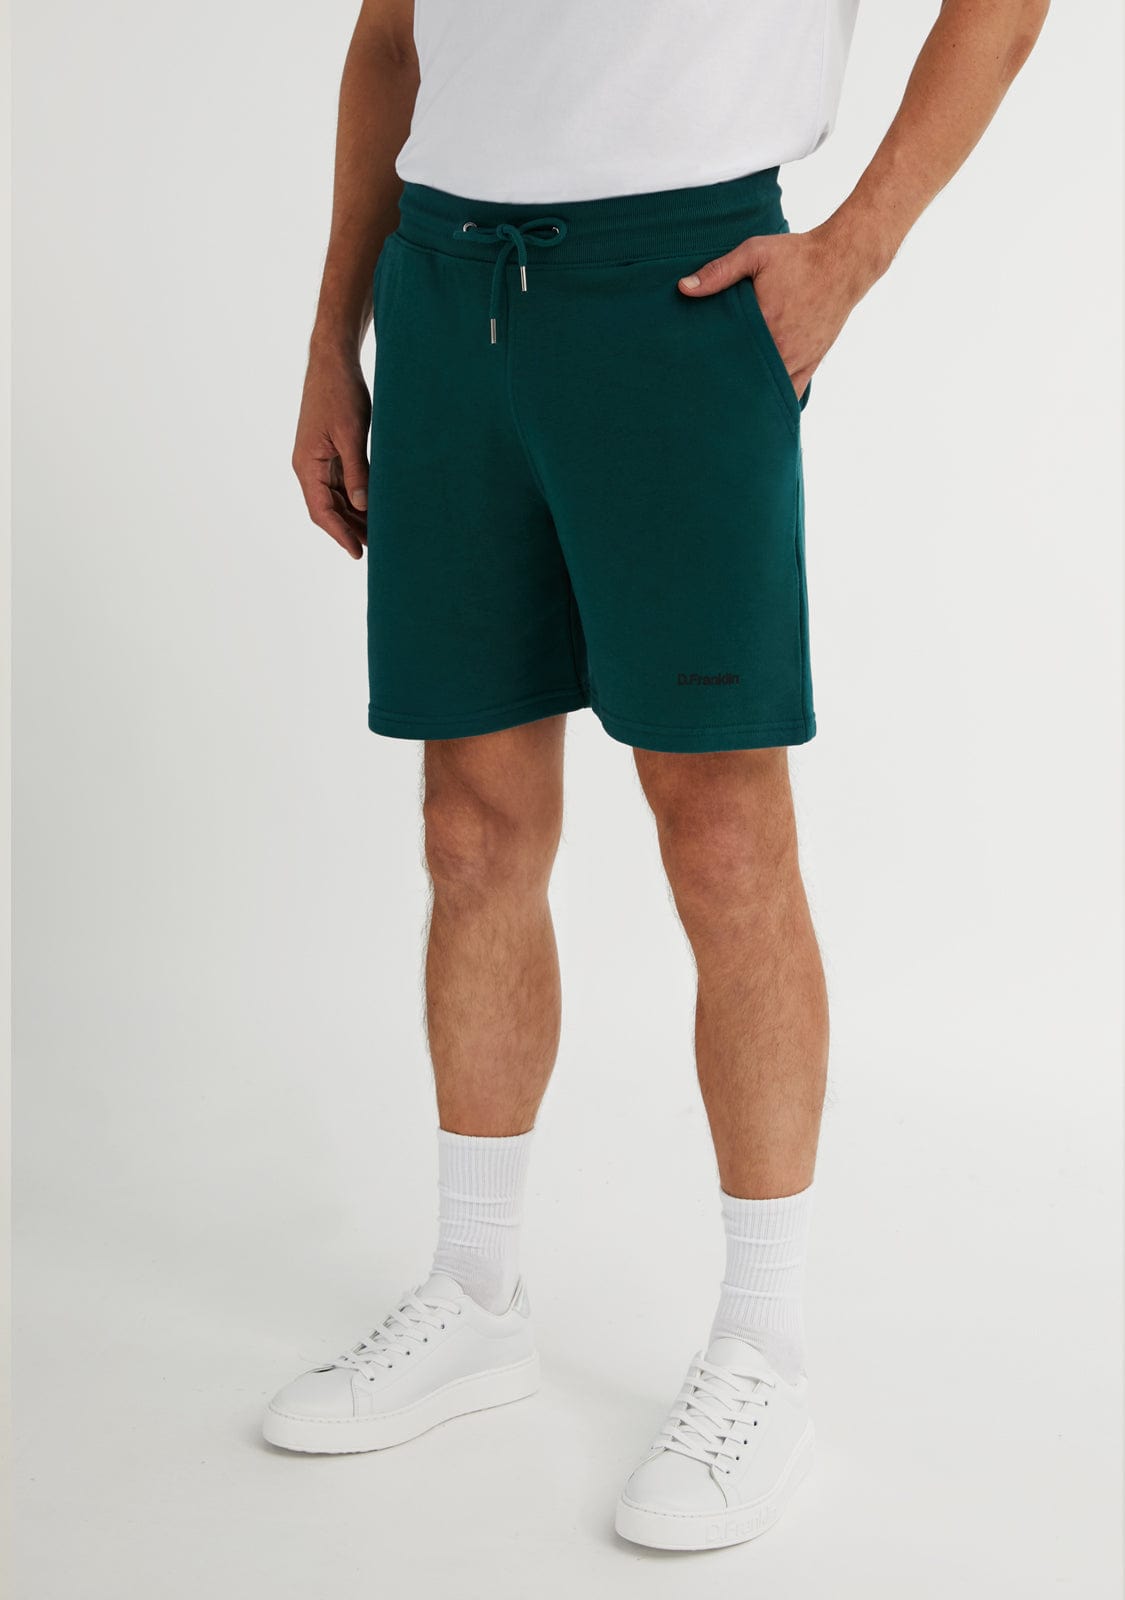 Pantalones Cortos deportivos y Shorts Hombre